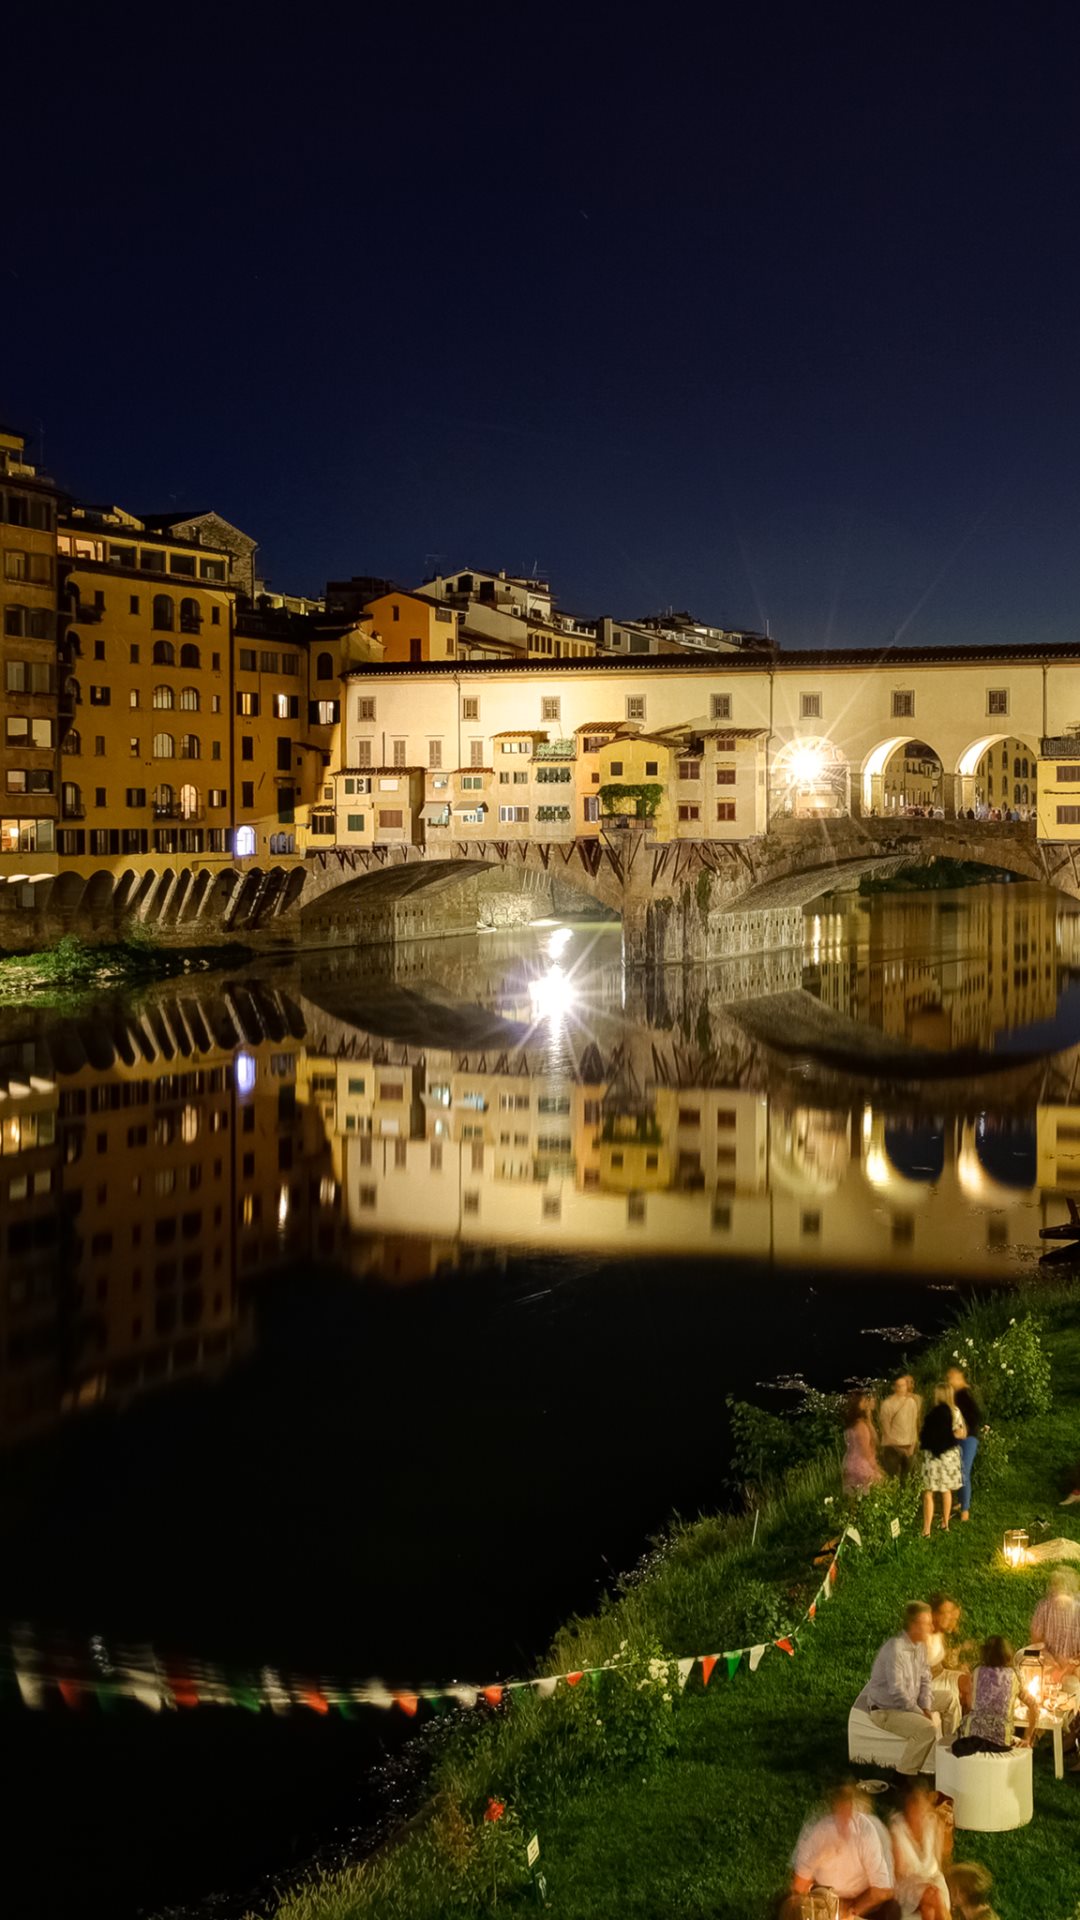 Ponte Vecchio (Old Bridge) HD Wallpapers | Photos & Images